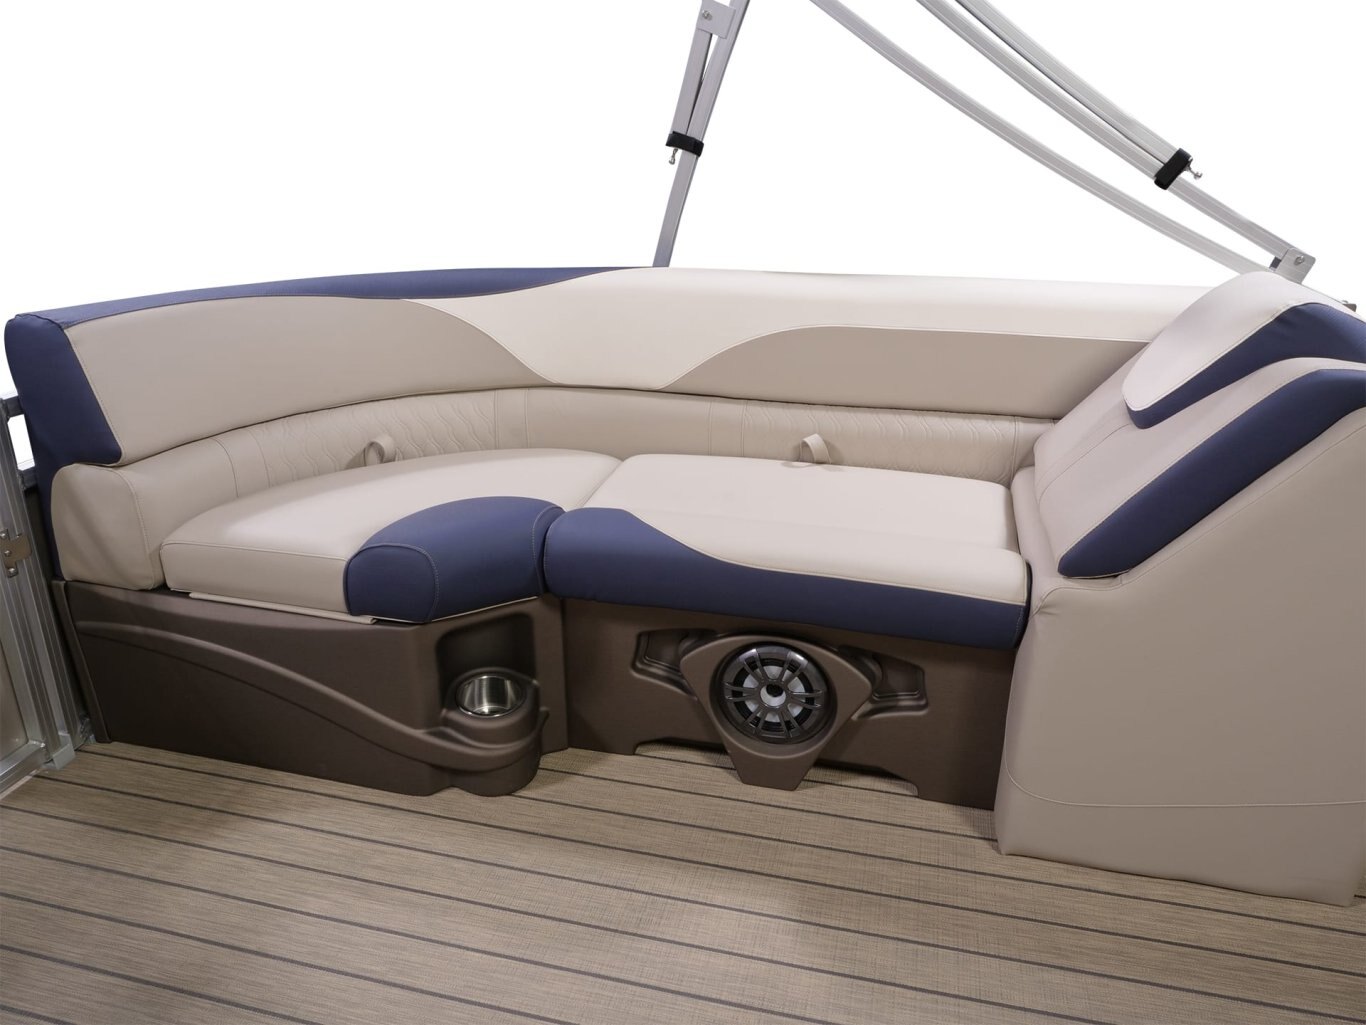 Legend Boats Q Series Lounge Plus Sport Pro